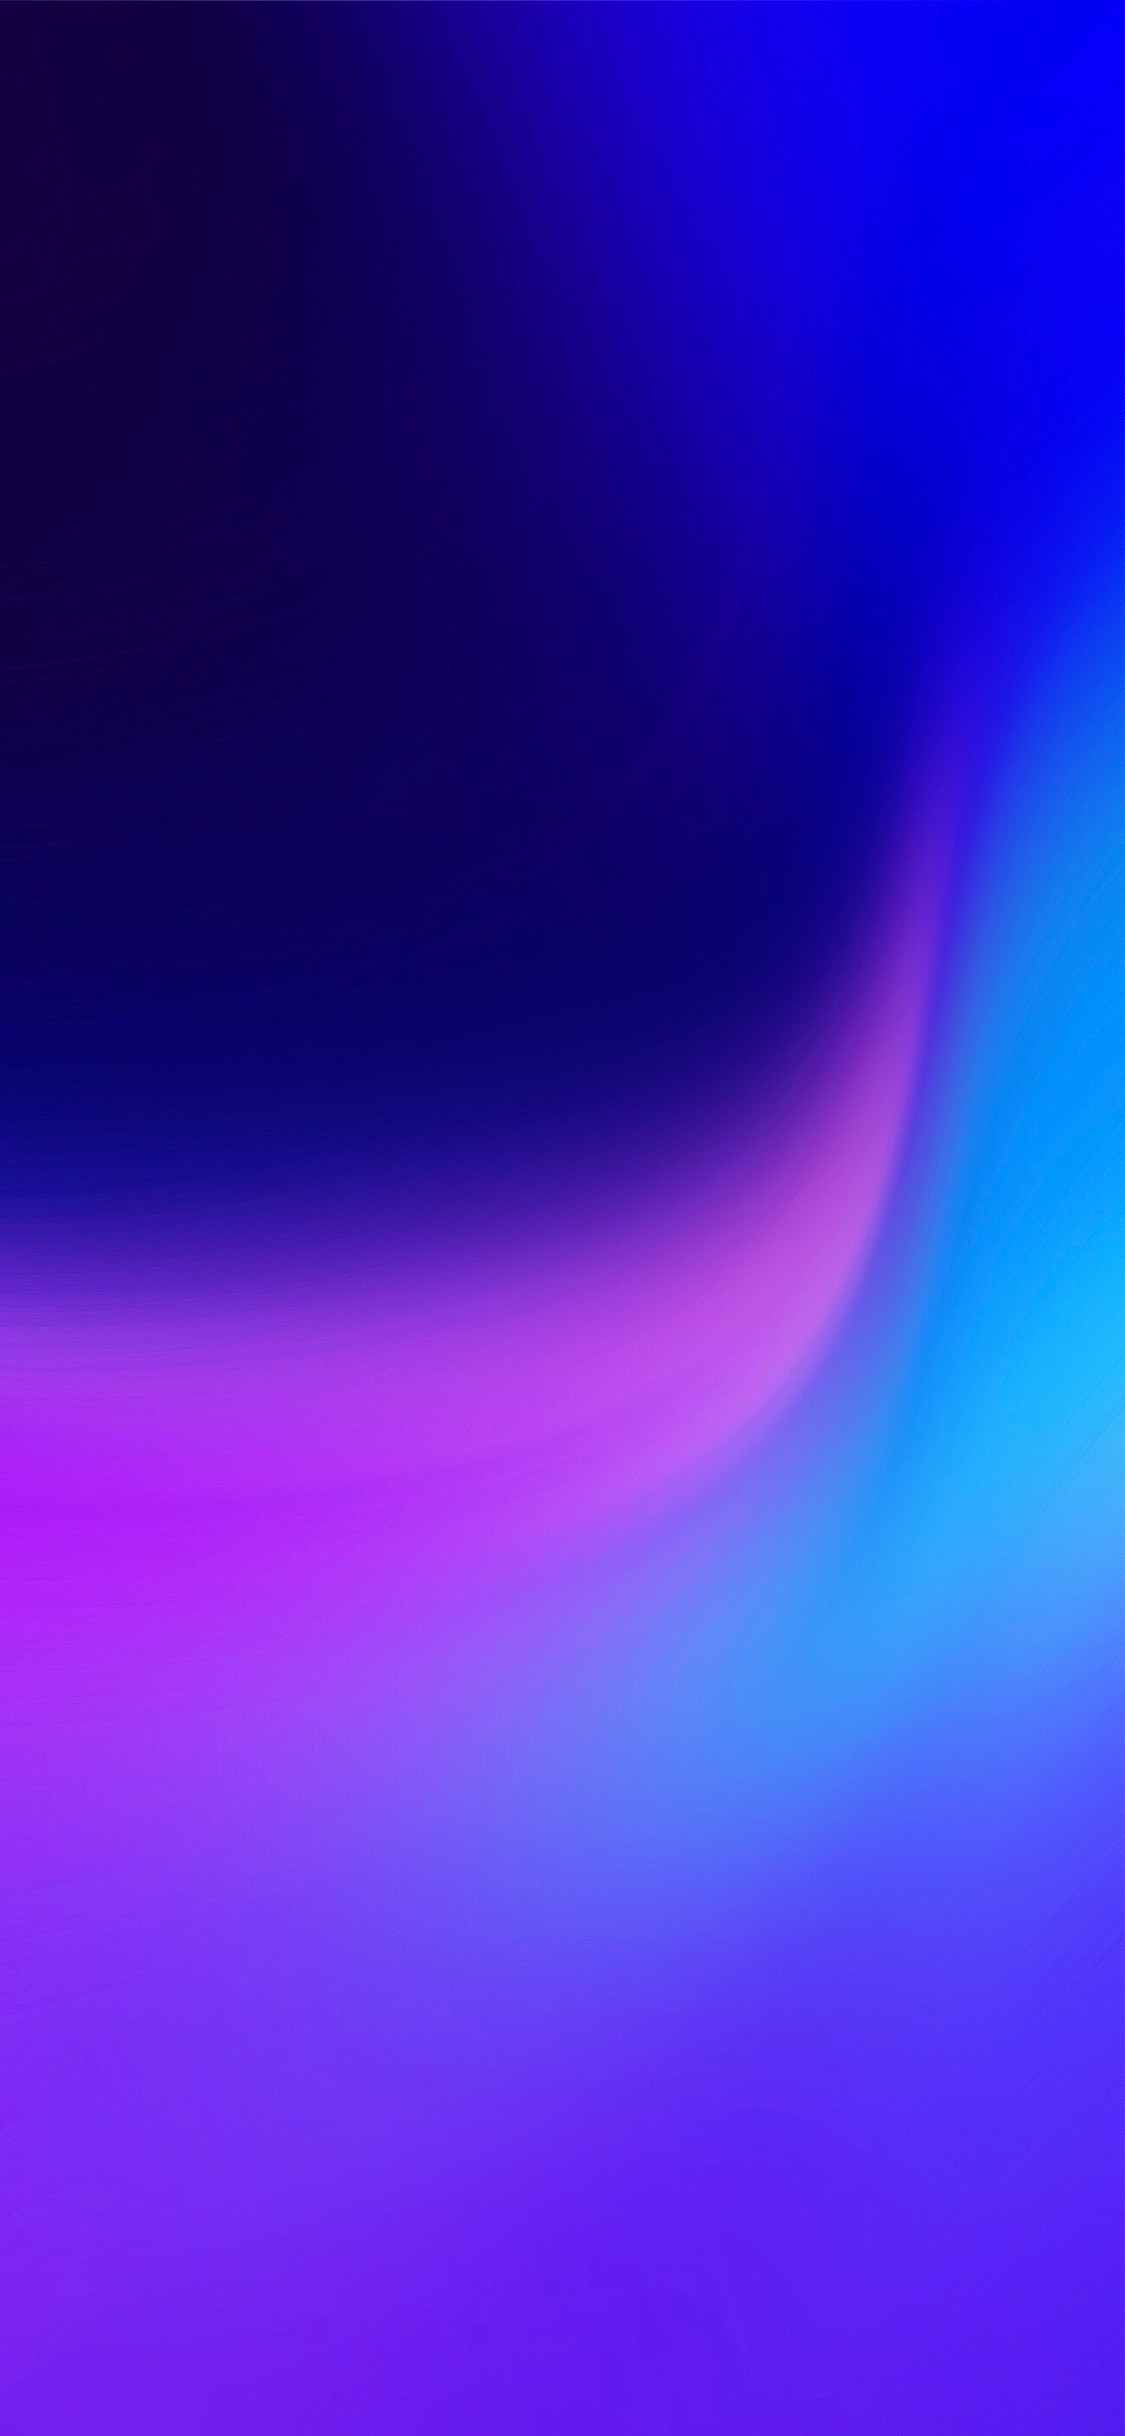 startbildschirm hintergrundbild,blau,violett,lila,elektrisches blau,licht